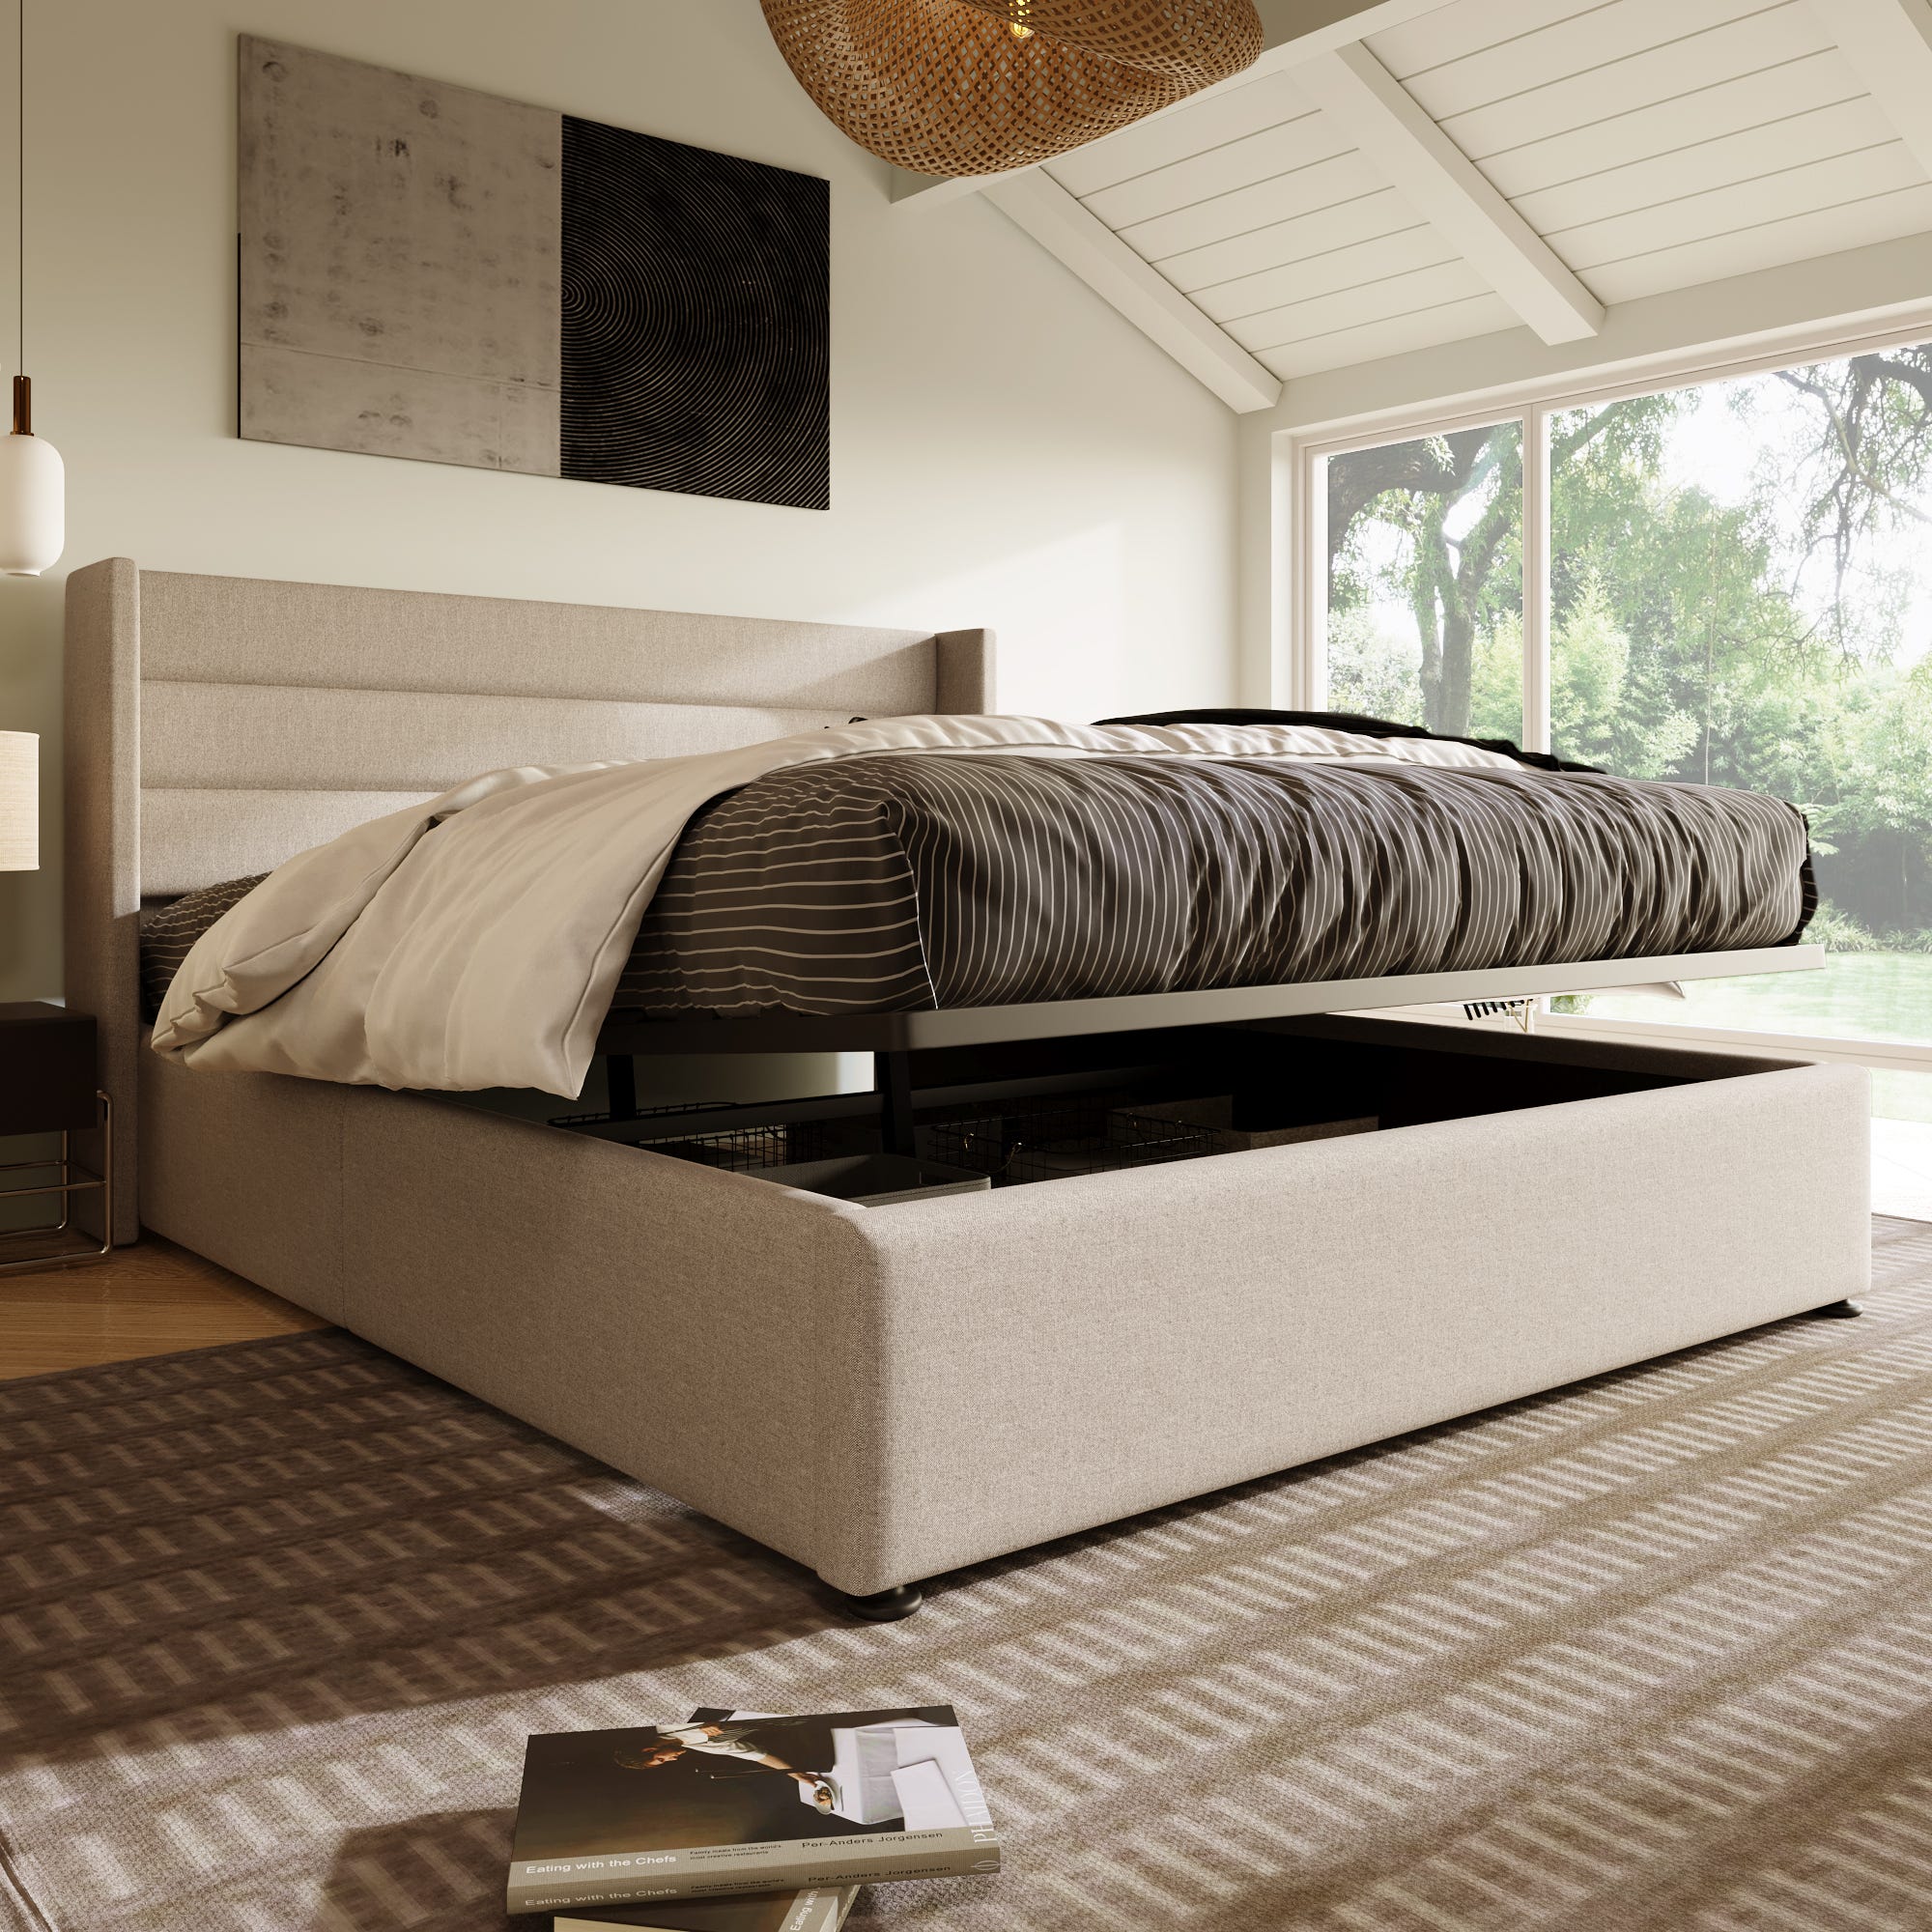 Cama con almacenamiento, cama tapizada hidráulica 180x200 cm